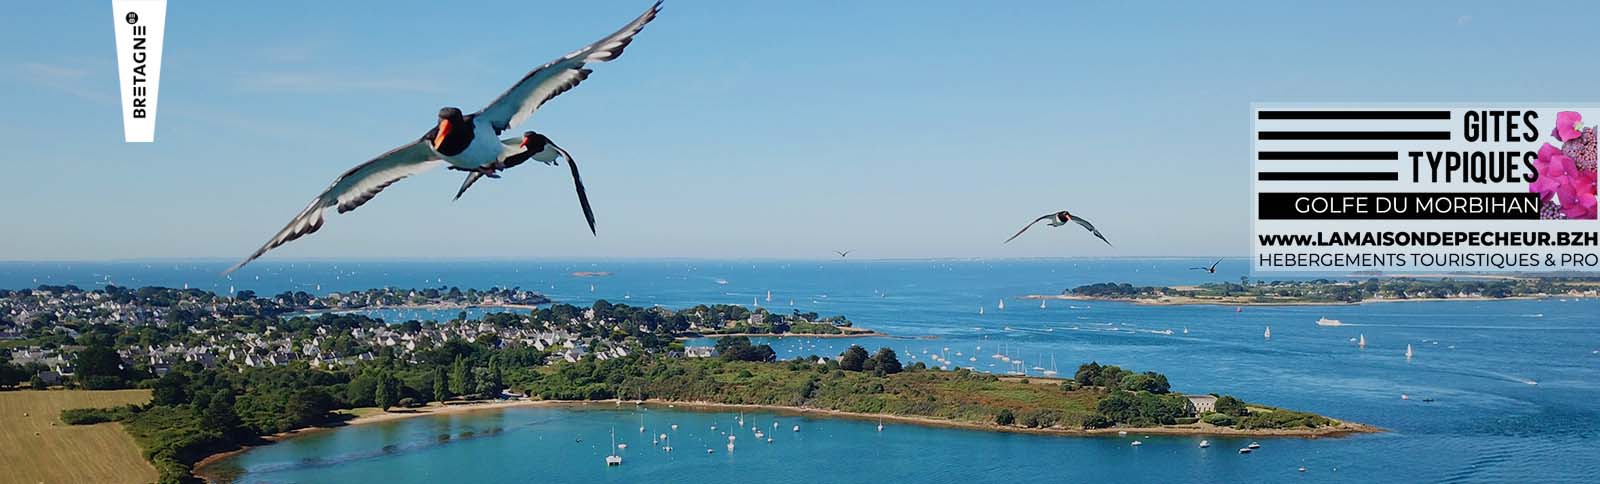 huitriers survolant l'entrée du Golfe du Morbihan